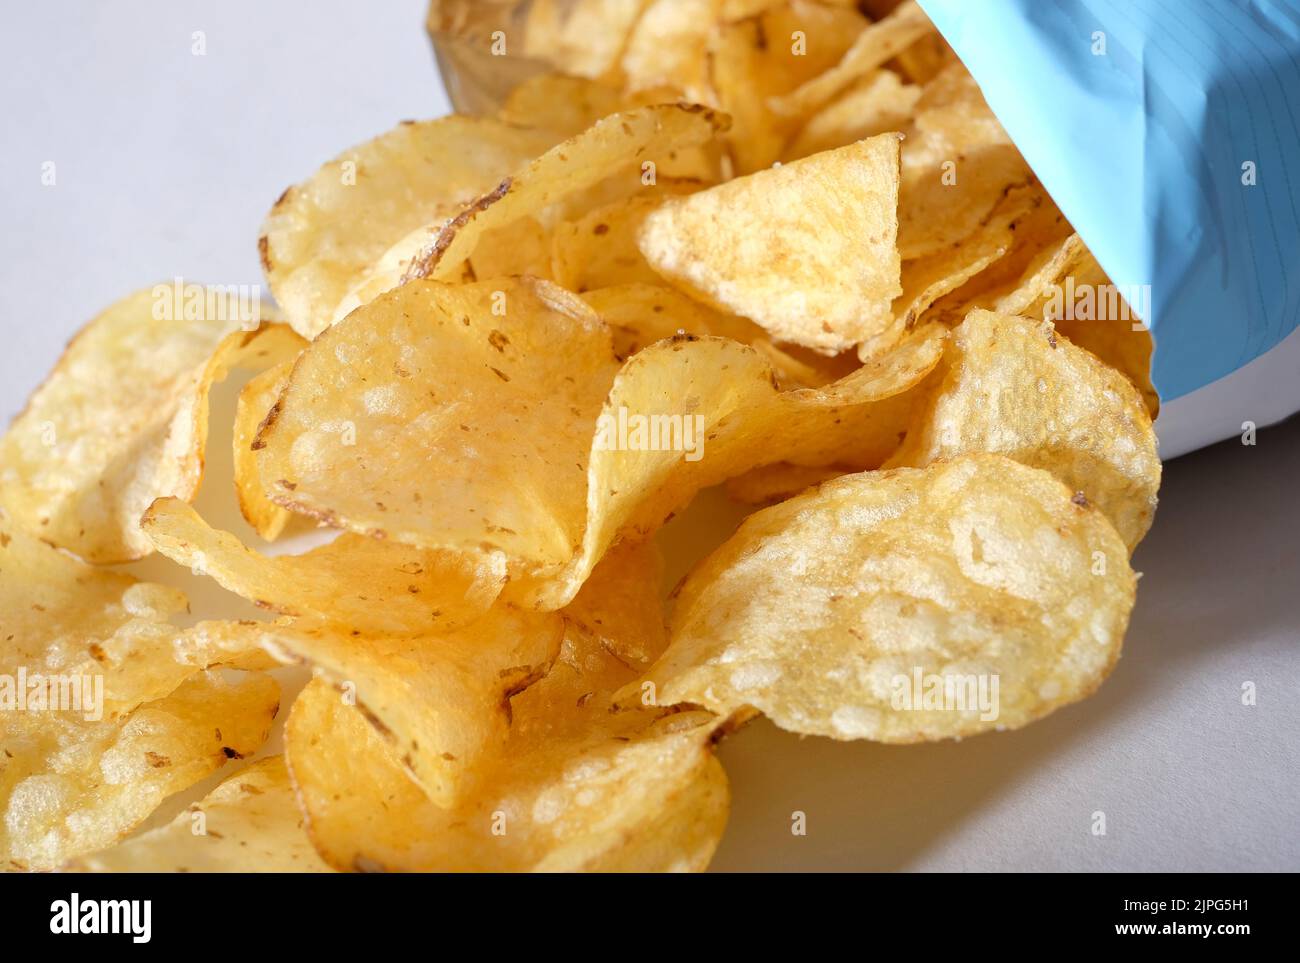 patatas fritas gourmet derramadas del paquete Foto de stock